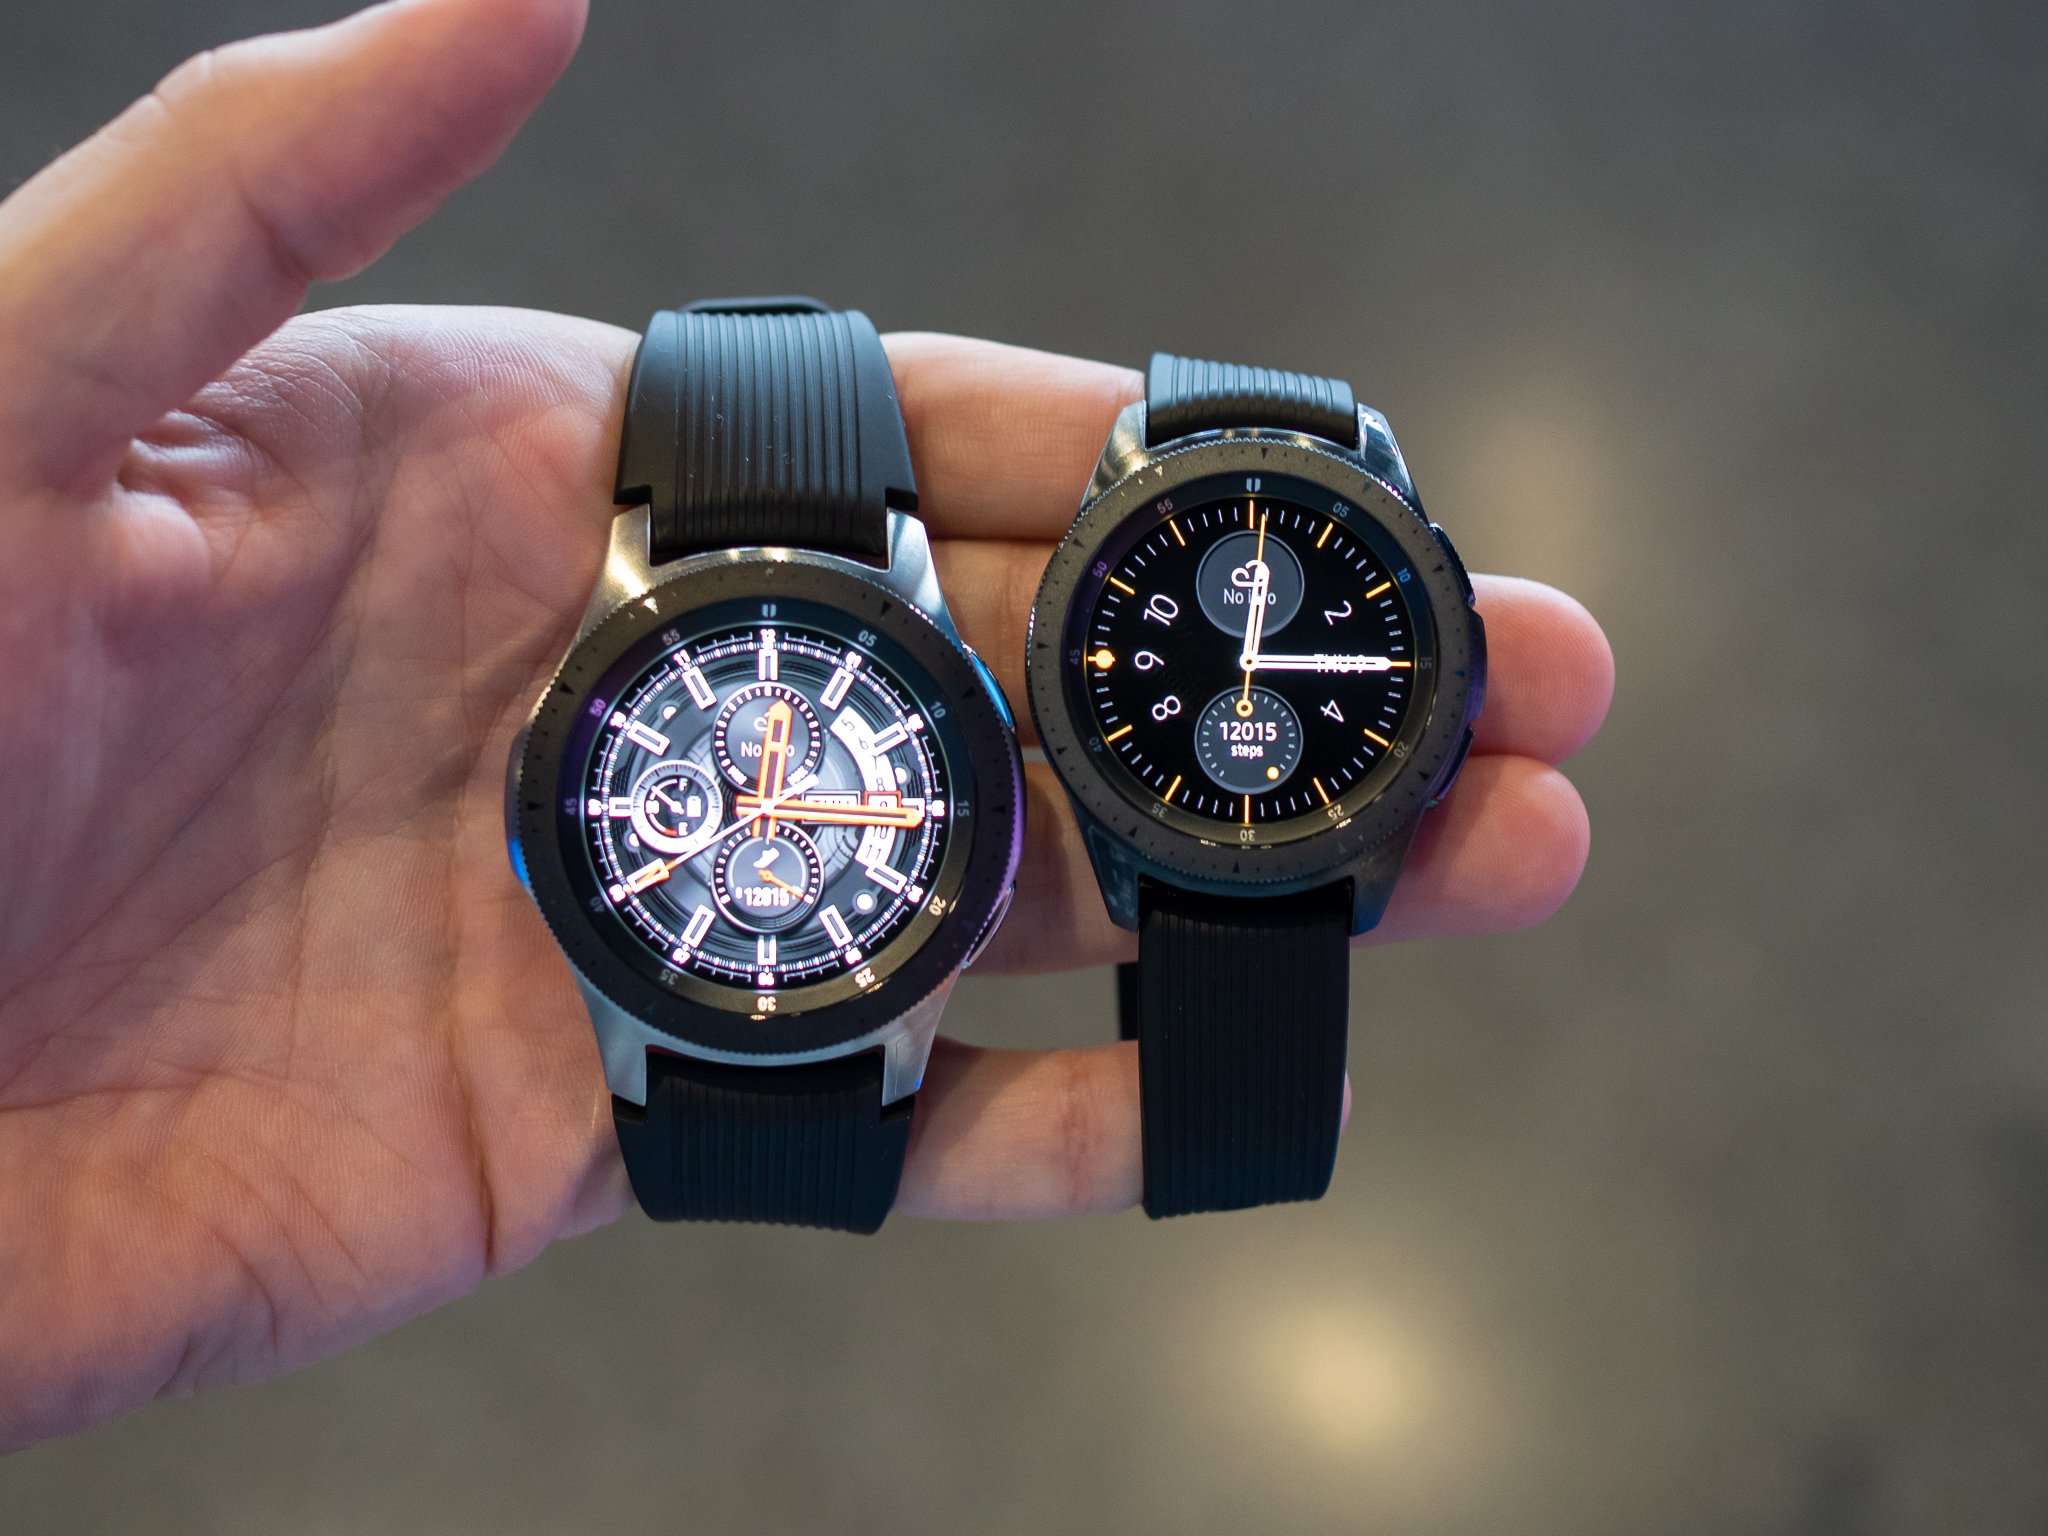 Samsung Watch 46mm Black